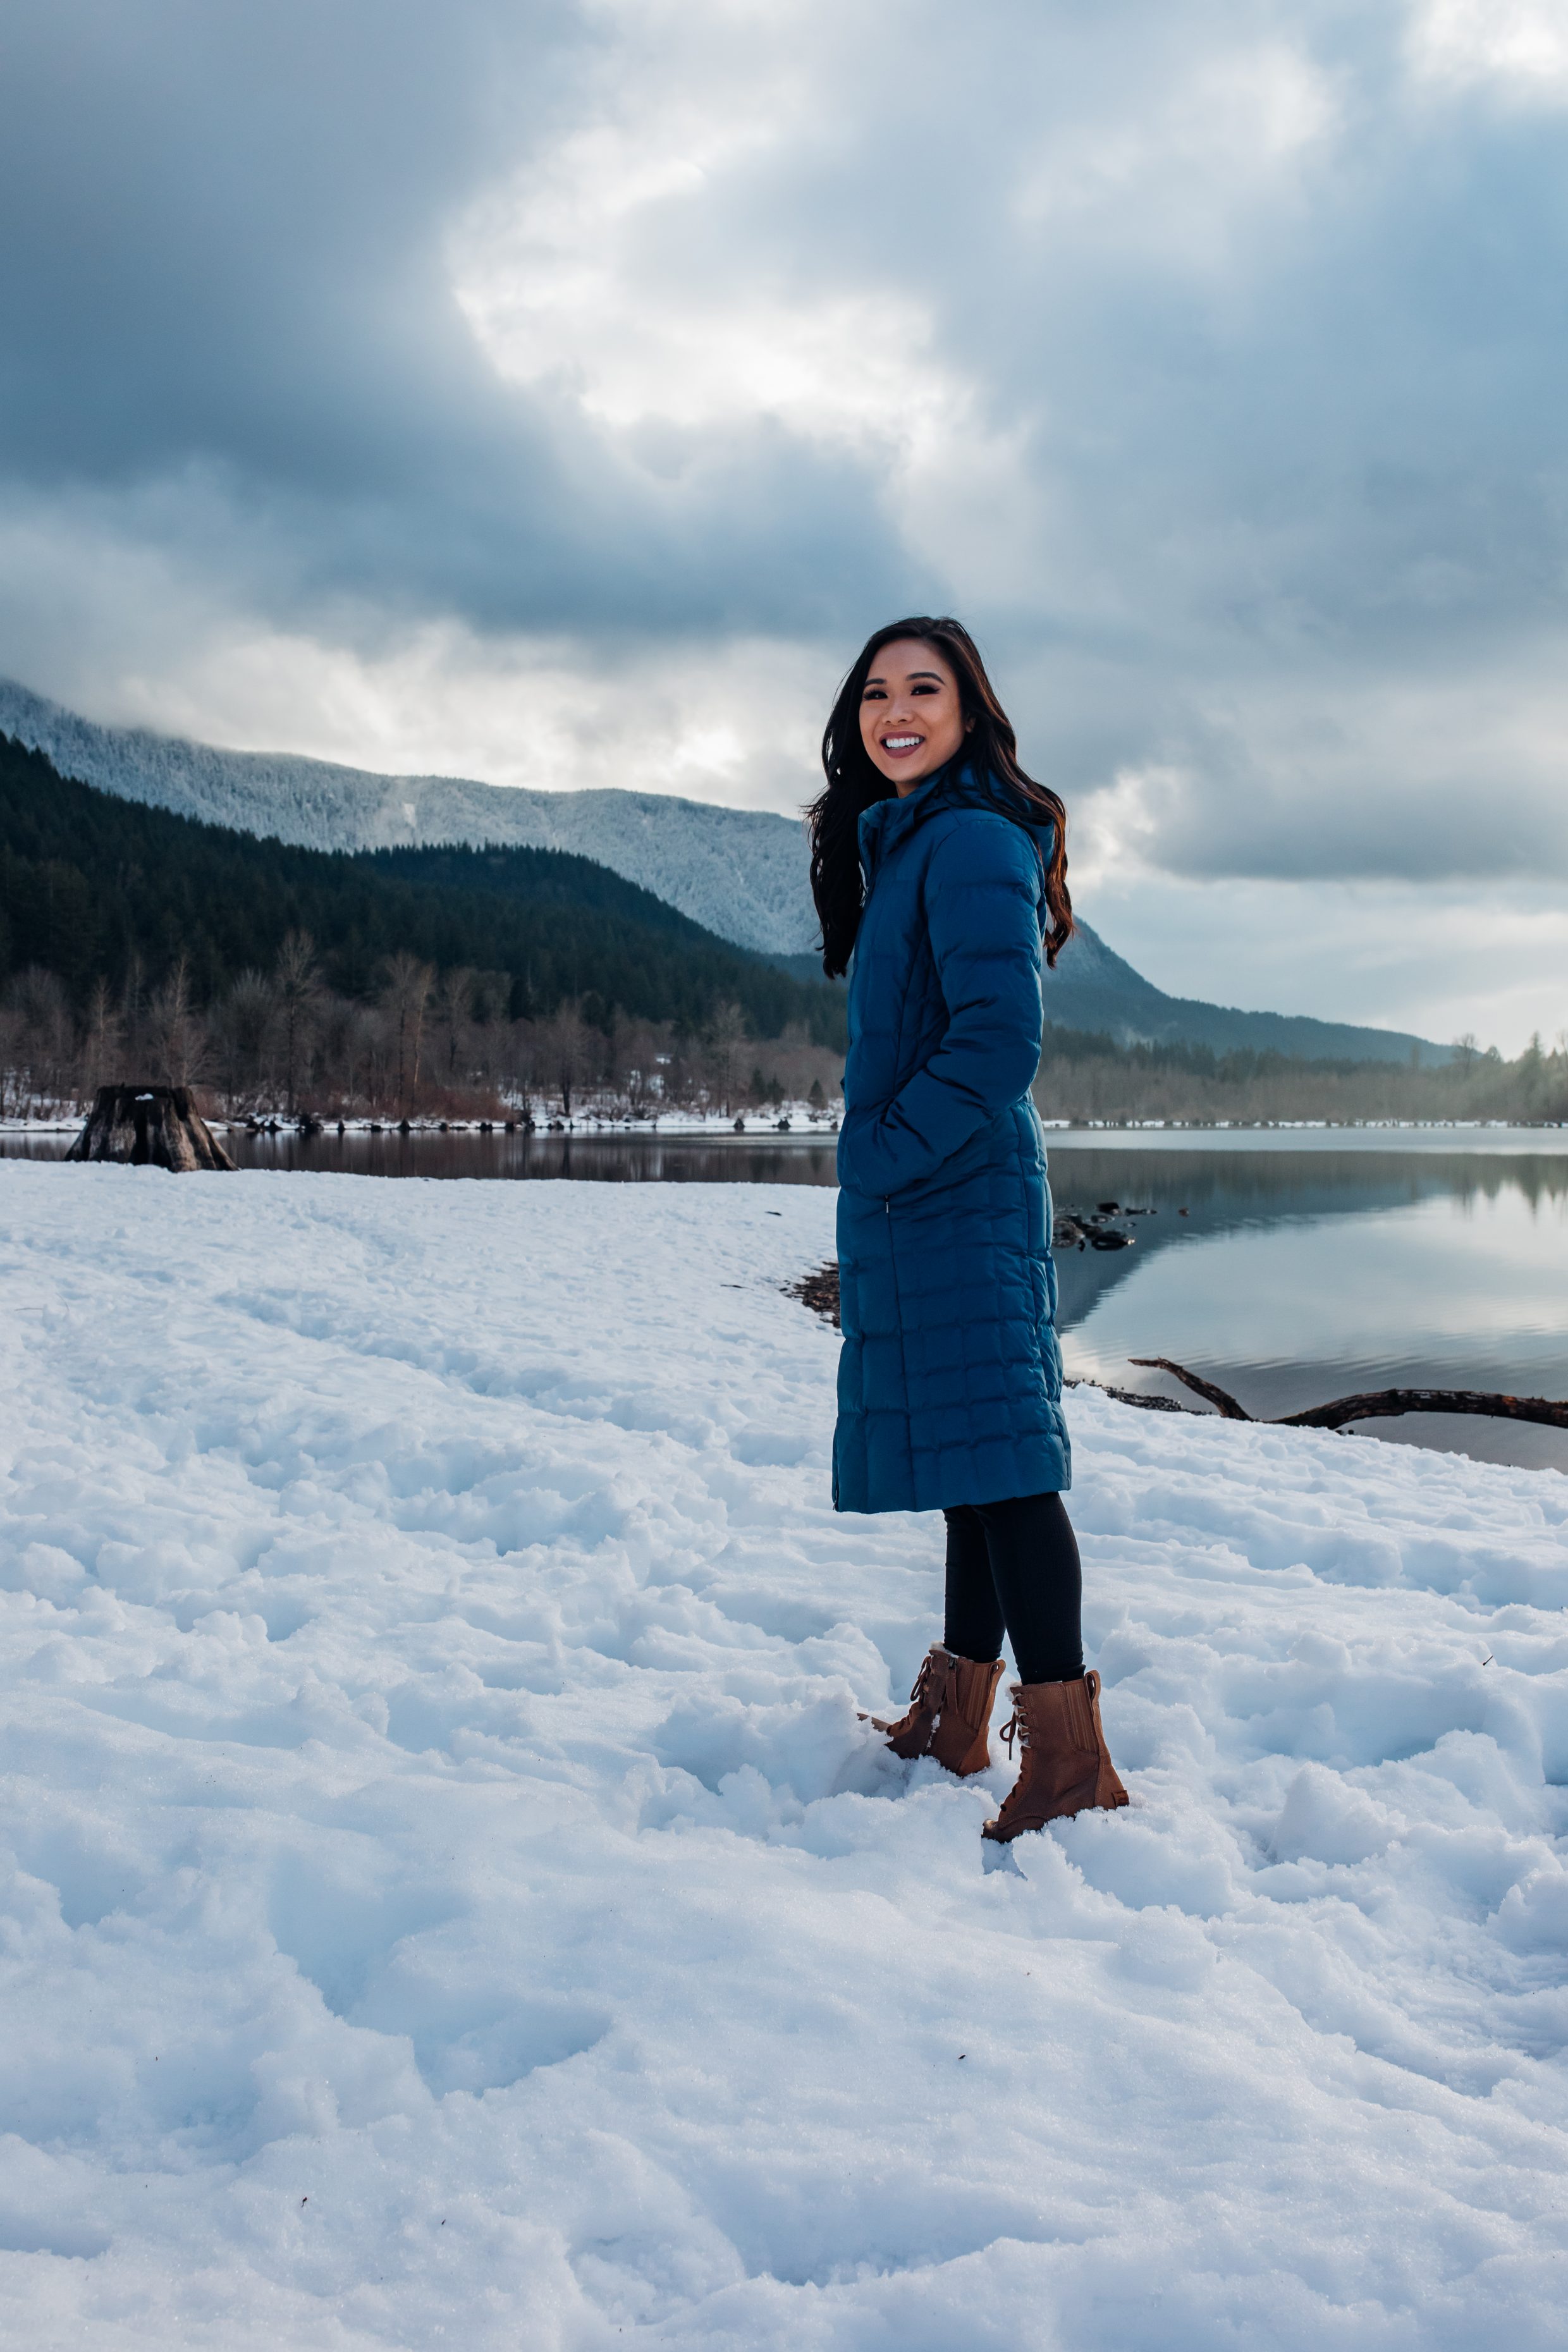 Hoang-Kim explores Rattlesnake Lake during winter wearing a blue Patagonia parka